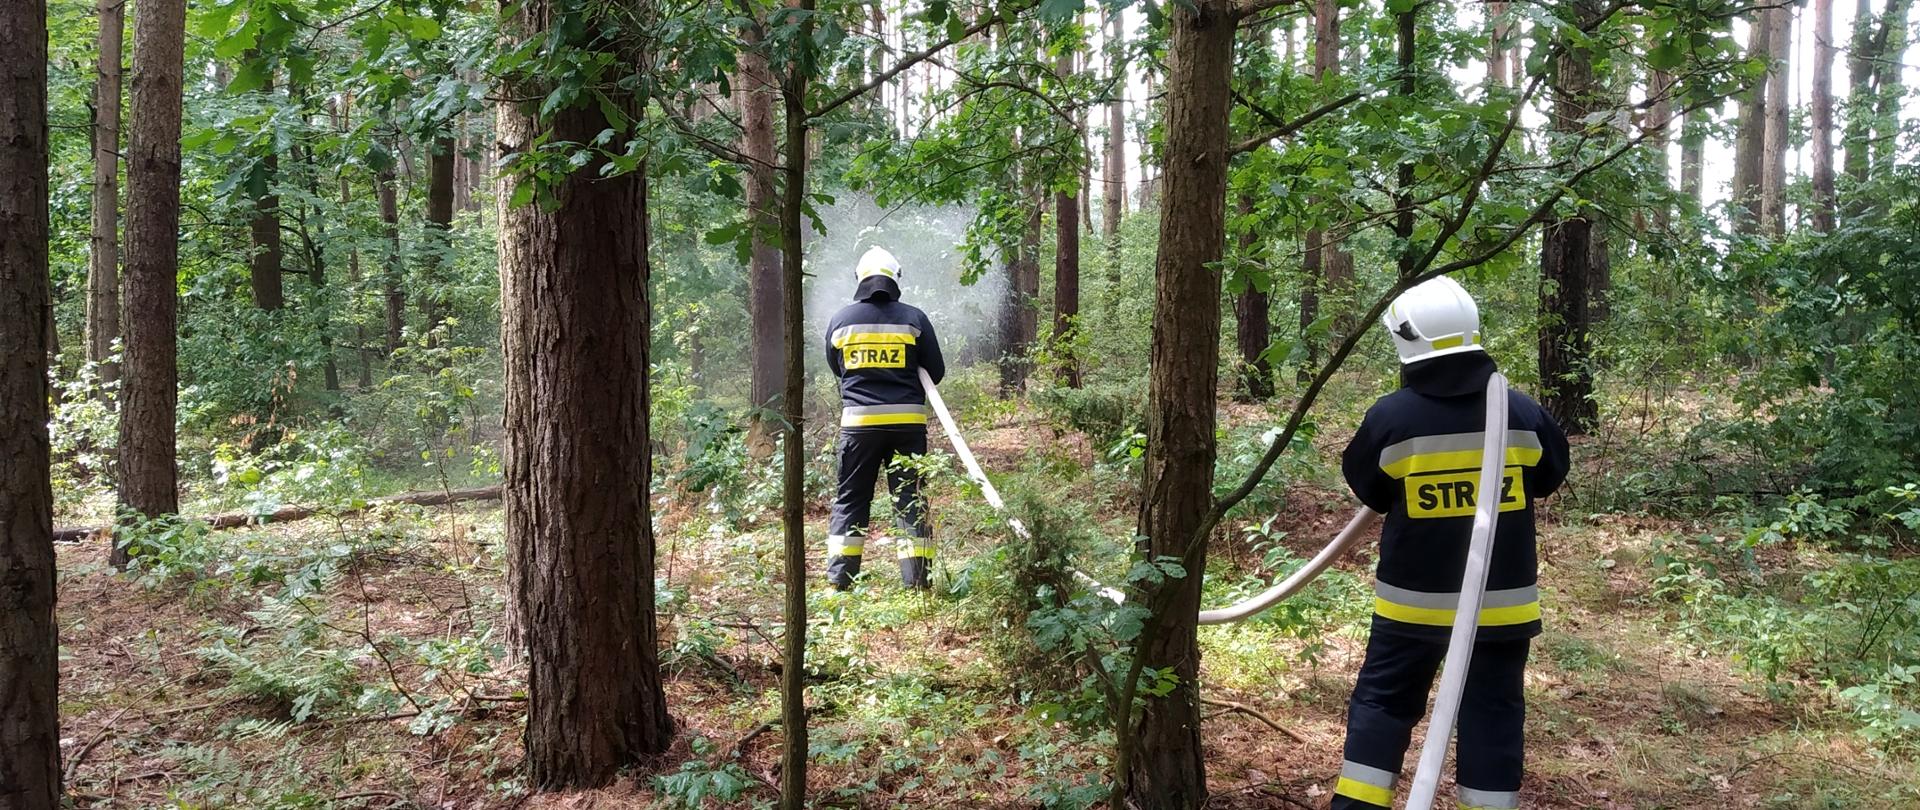 Dwóch strażaków OSP z linią gaśniczą biorących udział w ćwiczeniach w zakresie gaszenia kompleksów leśnych. Strażacy stoją pośród drzew.